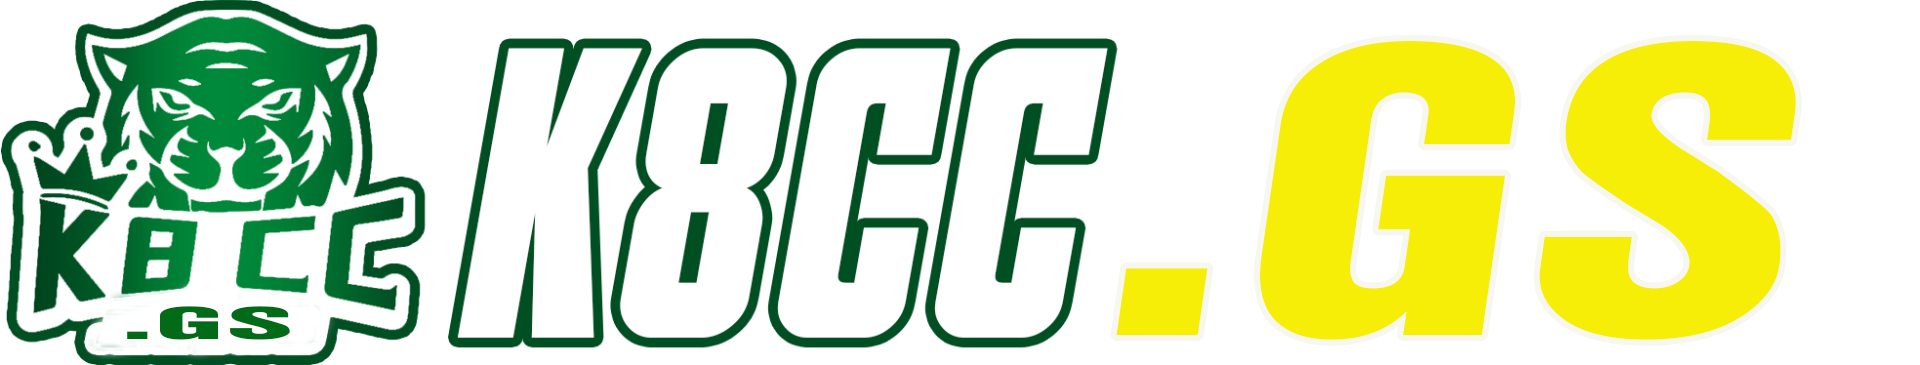 logo2-k8cc